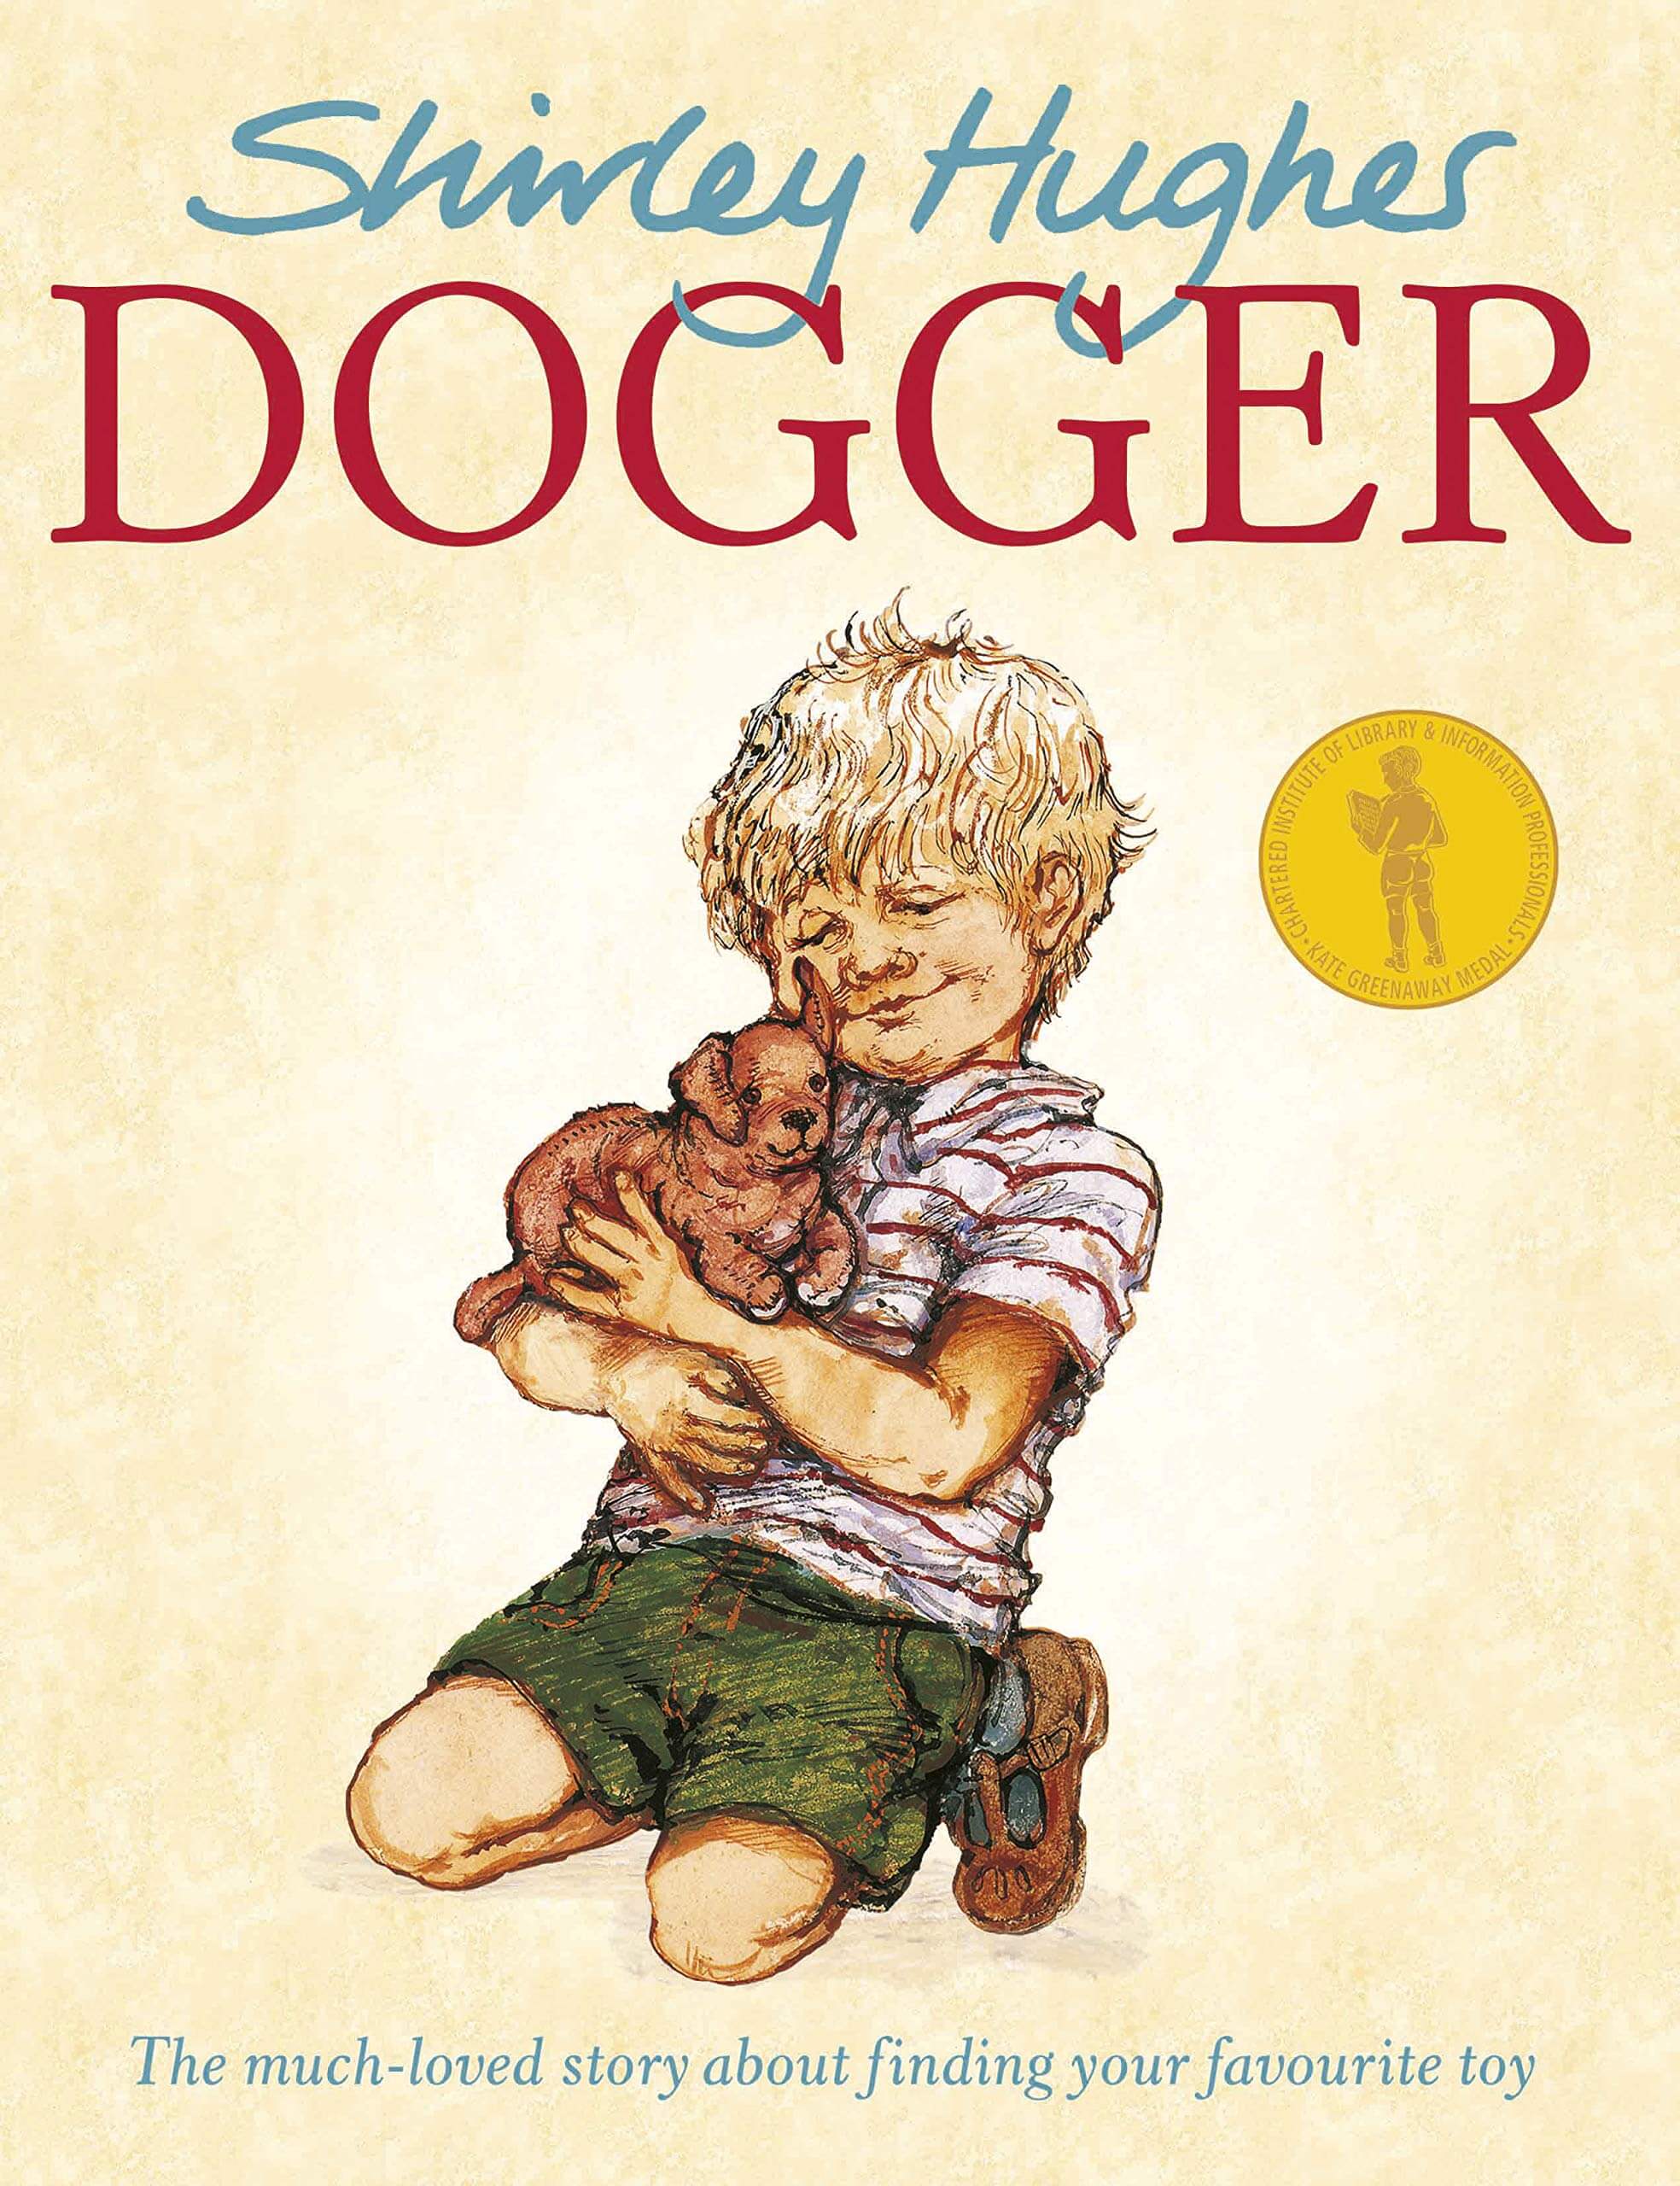 Book: Dogger